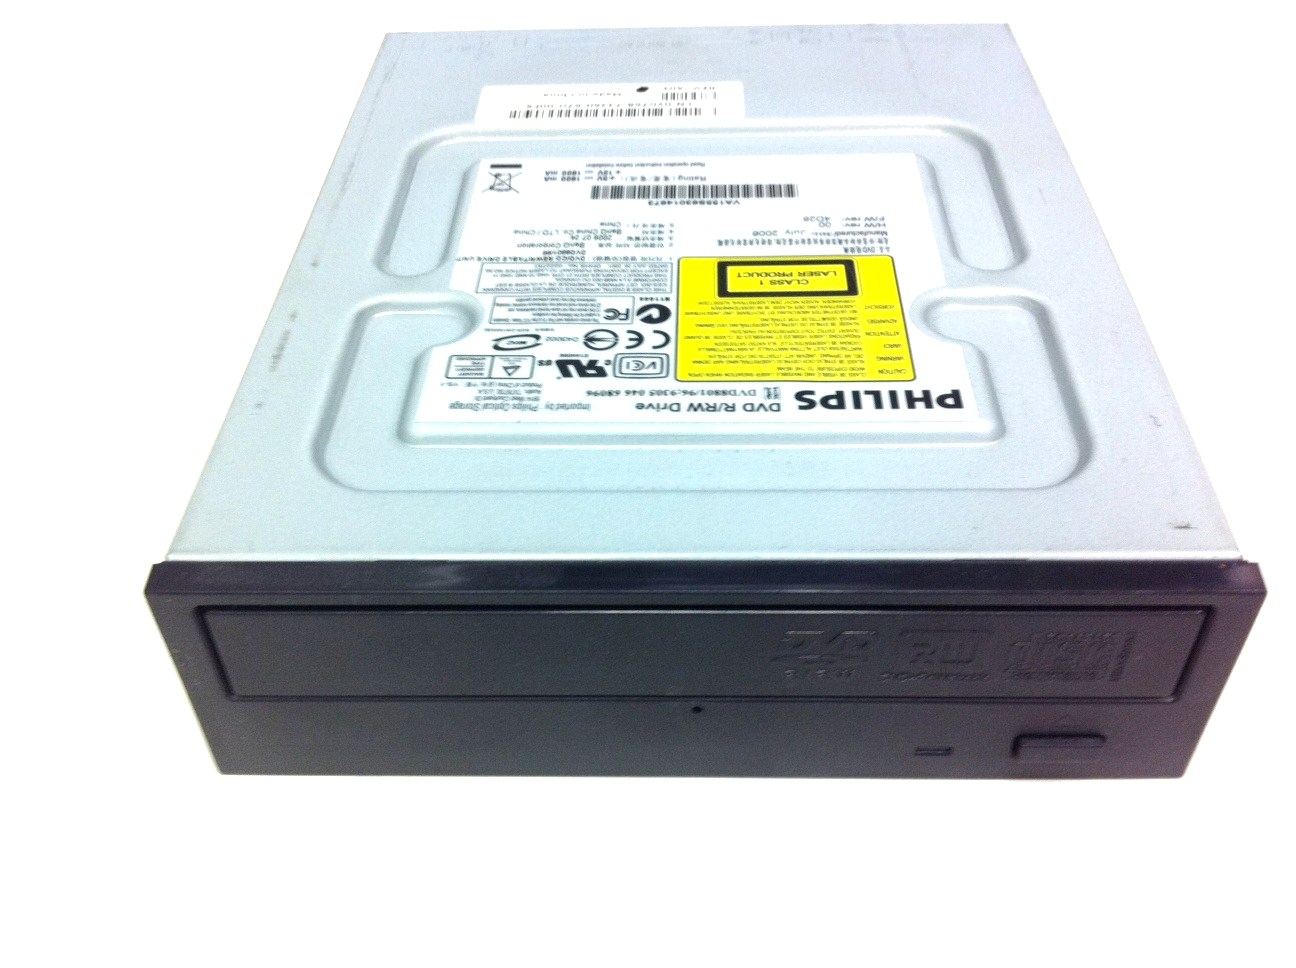 BenQ Phillips DVD+/-RW 5.25 inch IDE drive, 48X/32X/16X/8X black